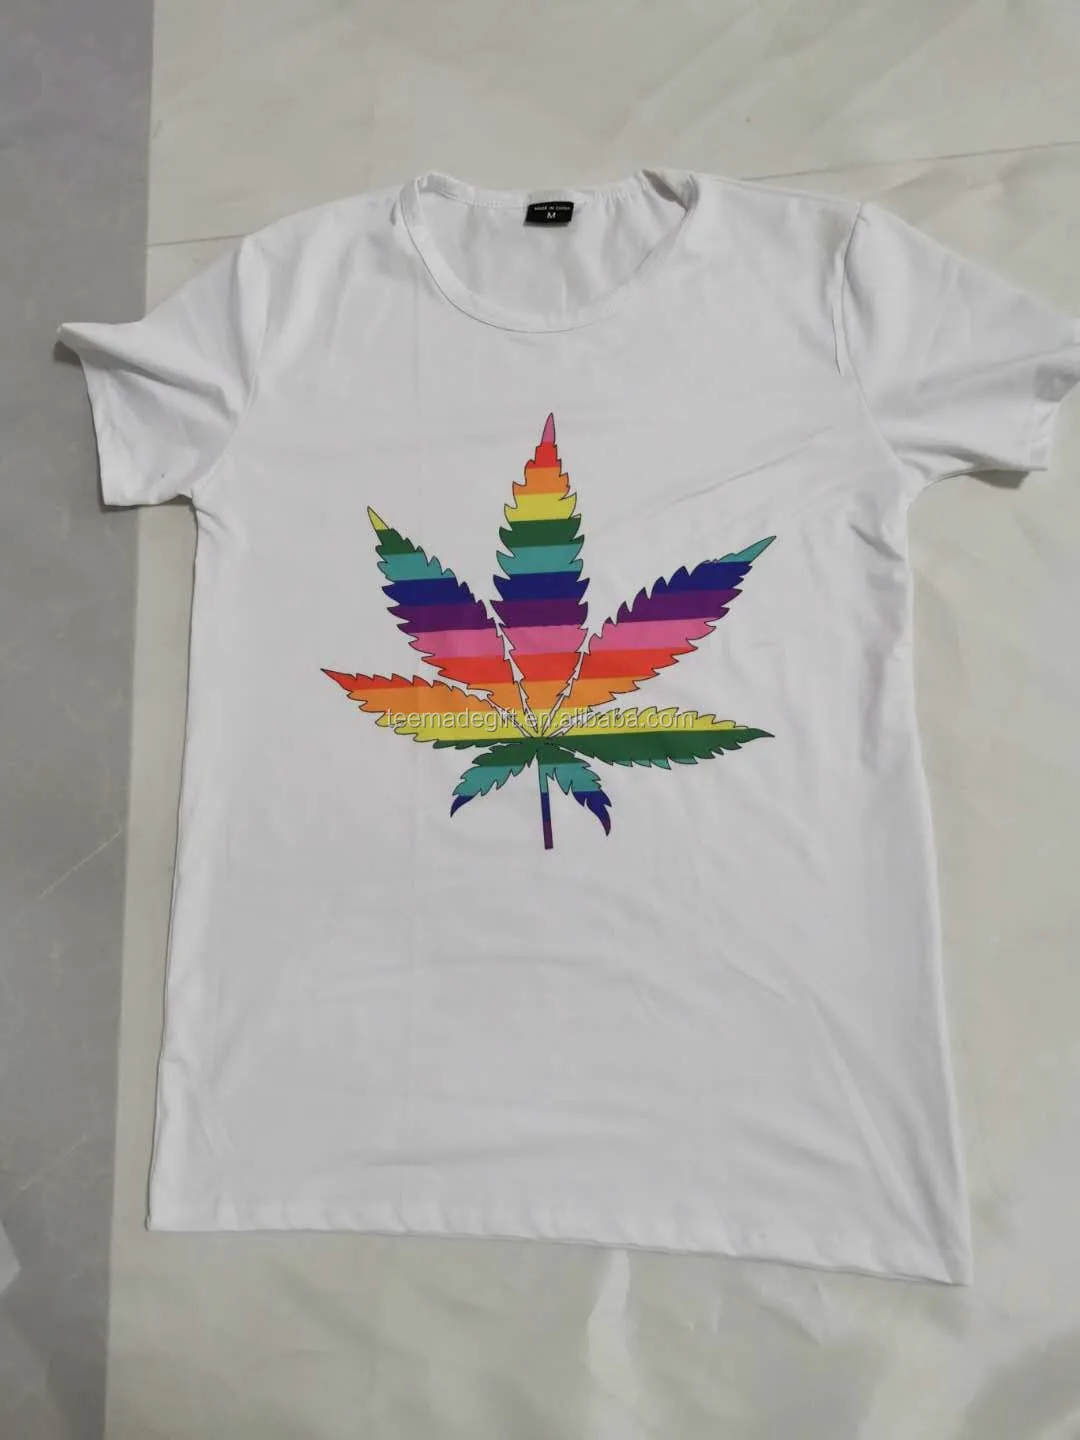 Sympton boog Competitief High Quality Gay Pride Shirt Rainbow Flag Lgbtq T-shirt - Buy Gay Pride  Shirt,Rainbow Flag,High Quality Lgbtq T-shirt Product on Alibaba.com